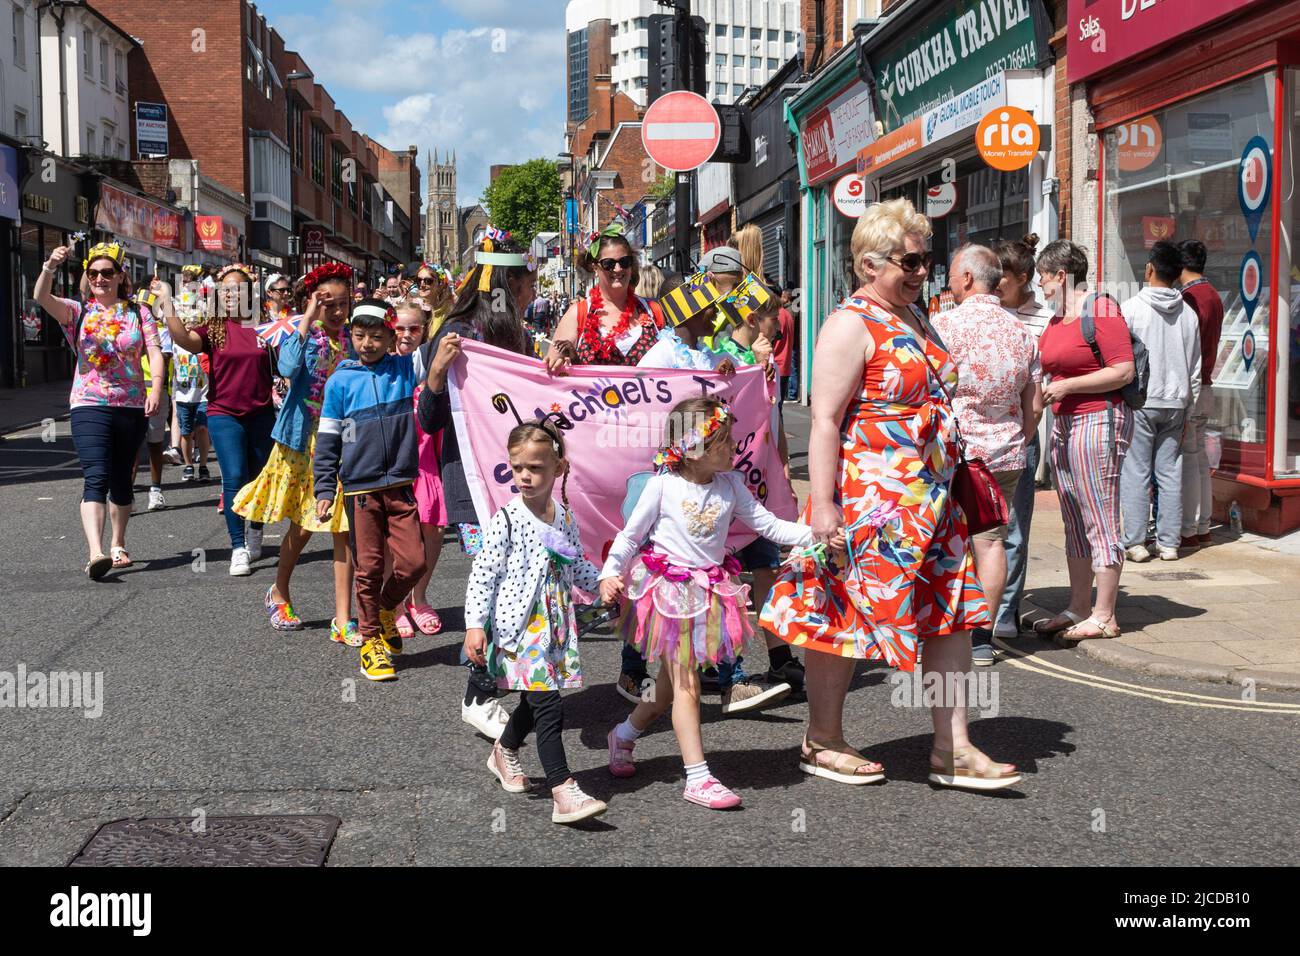 Les écoliers participent au Grand Parade à la fête de Victoria, un événement annuel à Aldershot, Hampshire, Angleterre, Royaume-Uni Banque D'Images